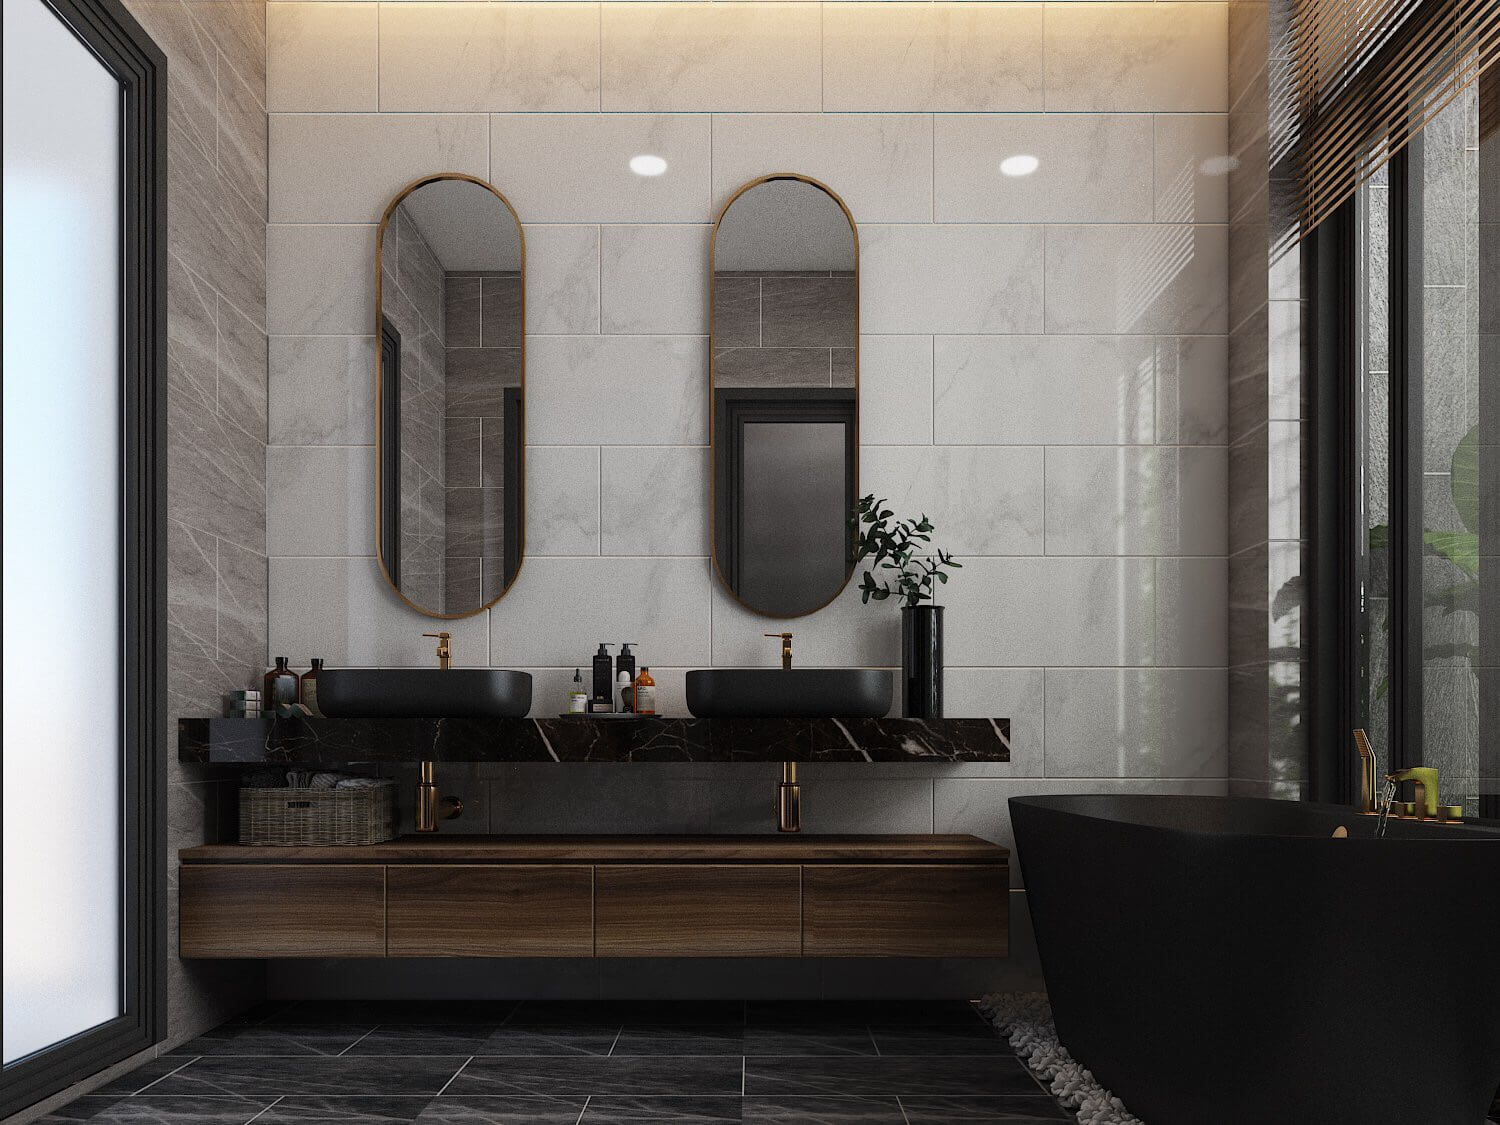 Phòng tắm, phong cách Hiện đại Modern, thiết kế concept nội thất, nhà phố Quận 4